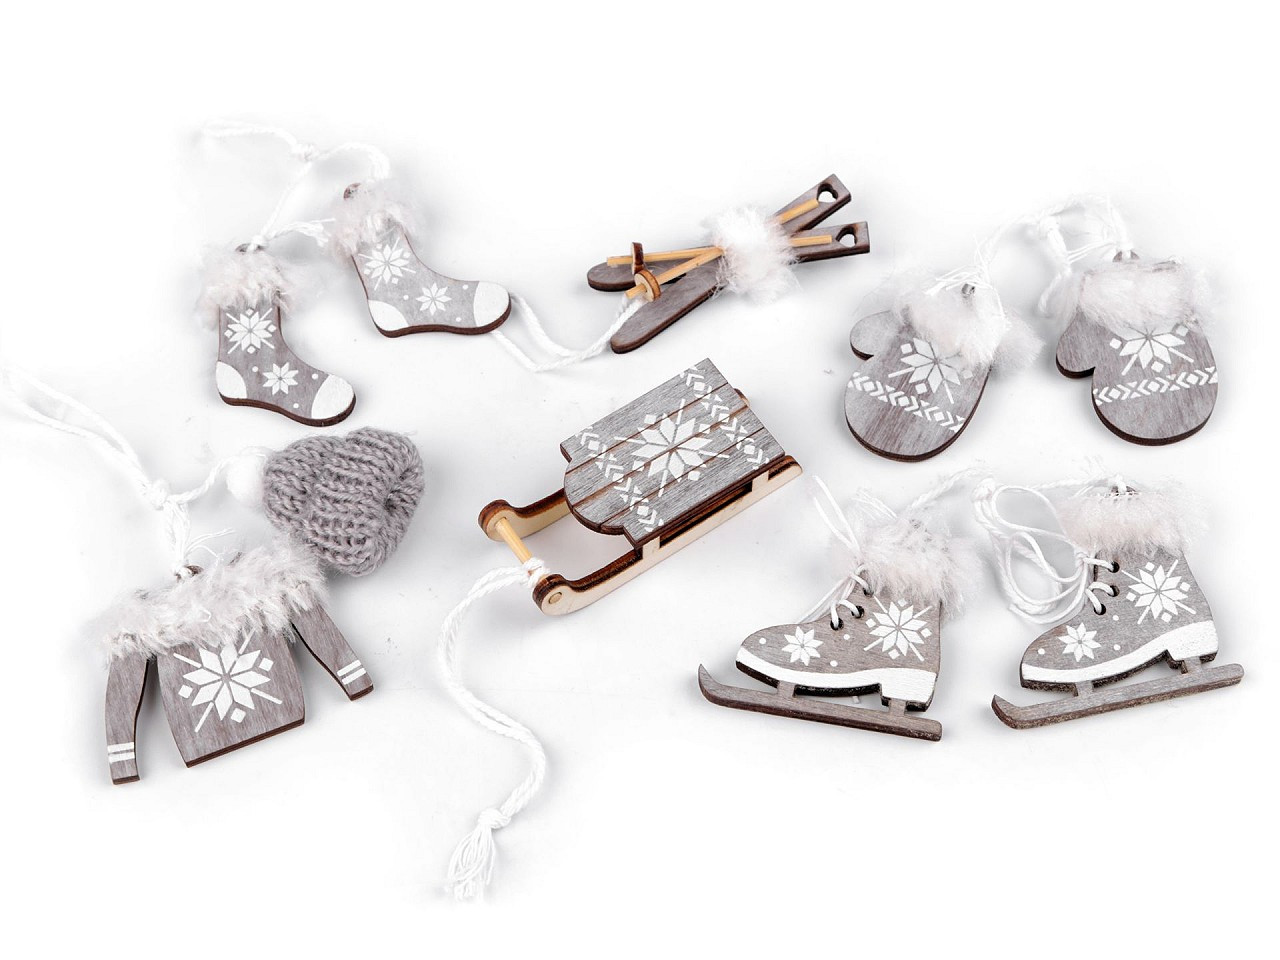 Vánoční dekorace - sáňky, lyže, brusle, čepice, bunda, rukavice, ponožky, barva 4 šedá